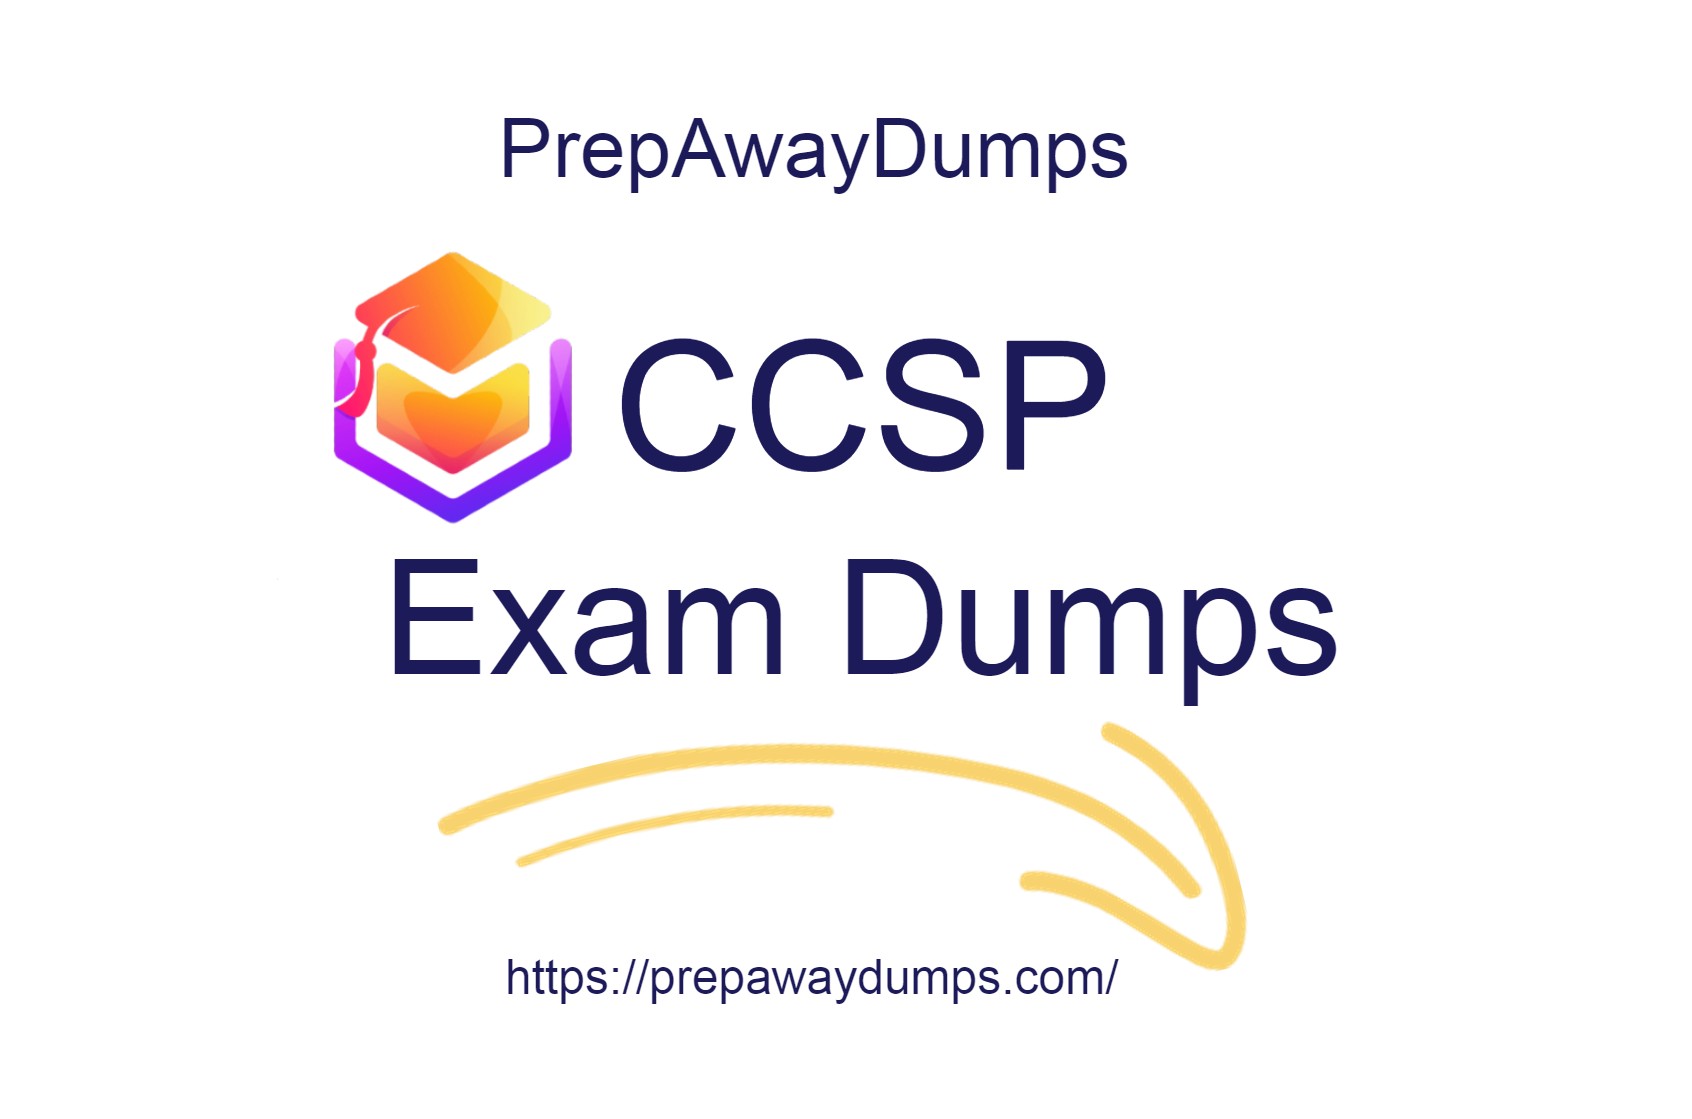 CCSP Exam Dumps